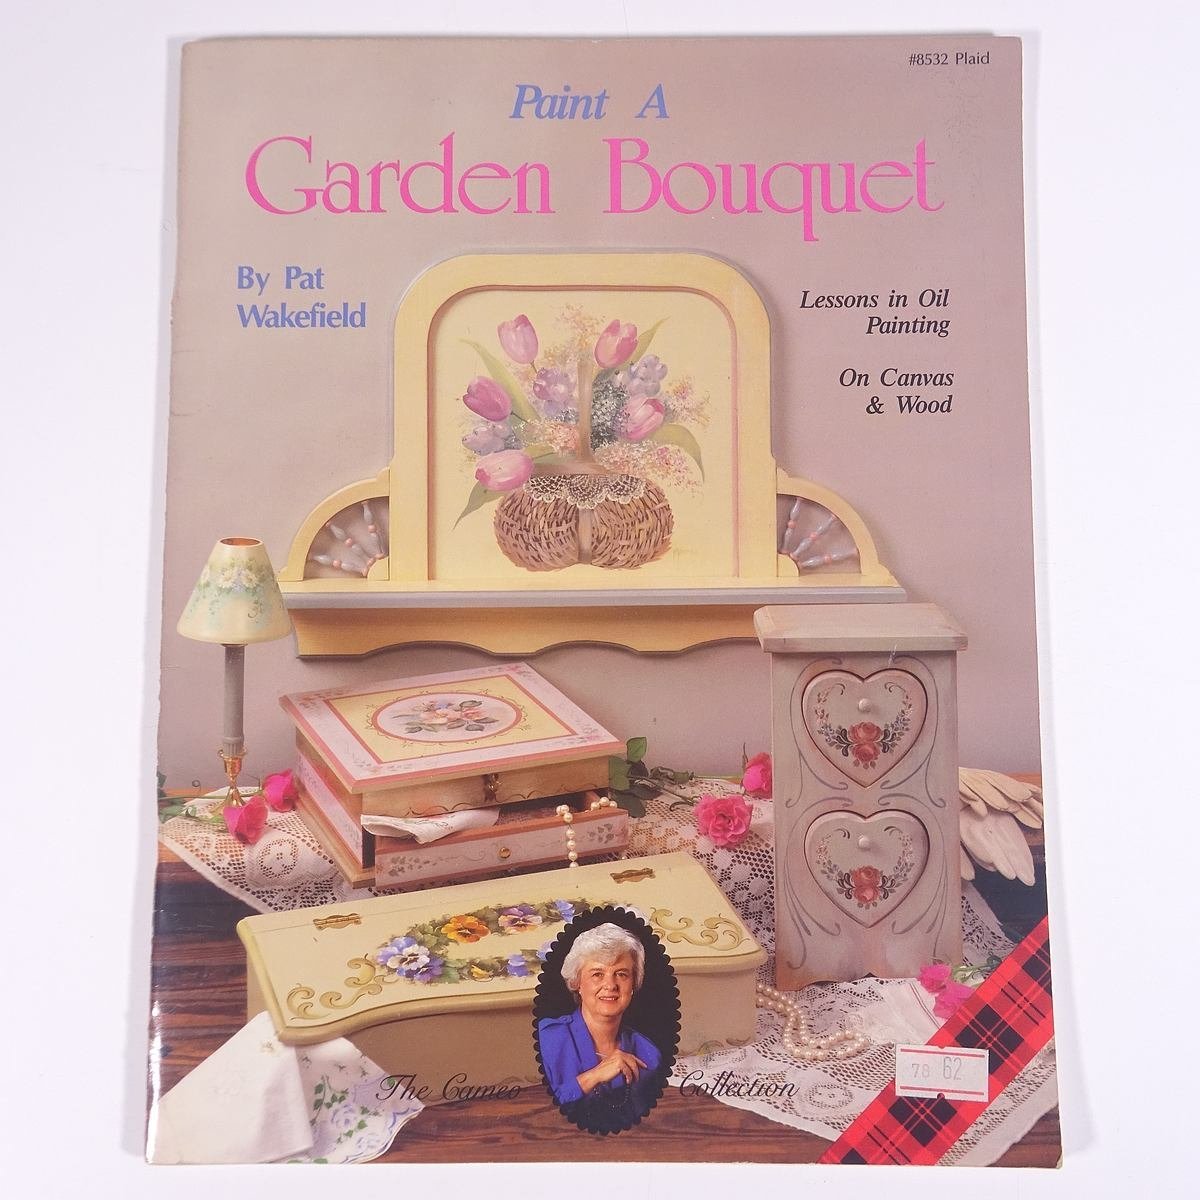 【英文书】Pat a Garden Bouquet Pat Wakefield 1990大书艺术美术绘画西洋画油画插画技法书, 艺术, 娱乐, 绘画, 技术书